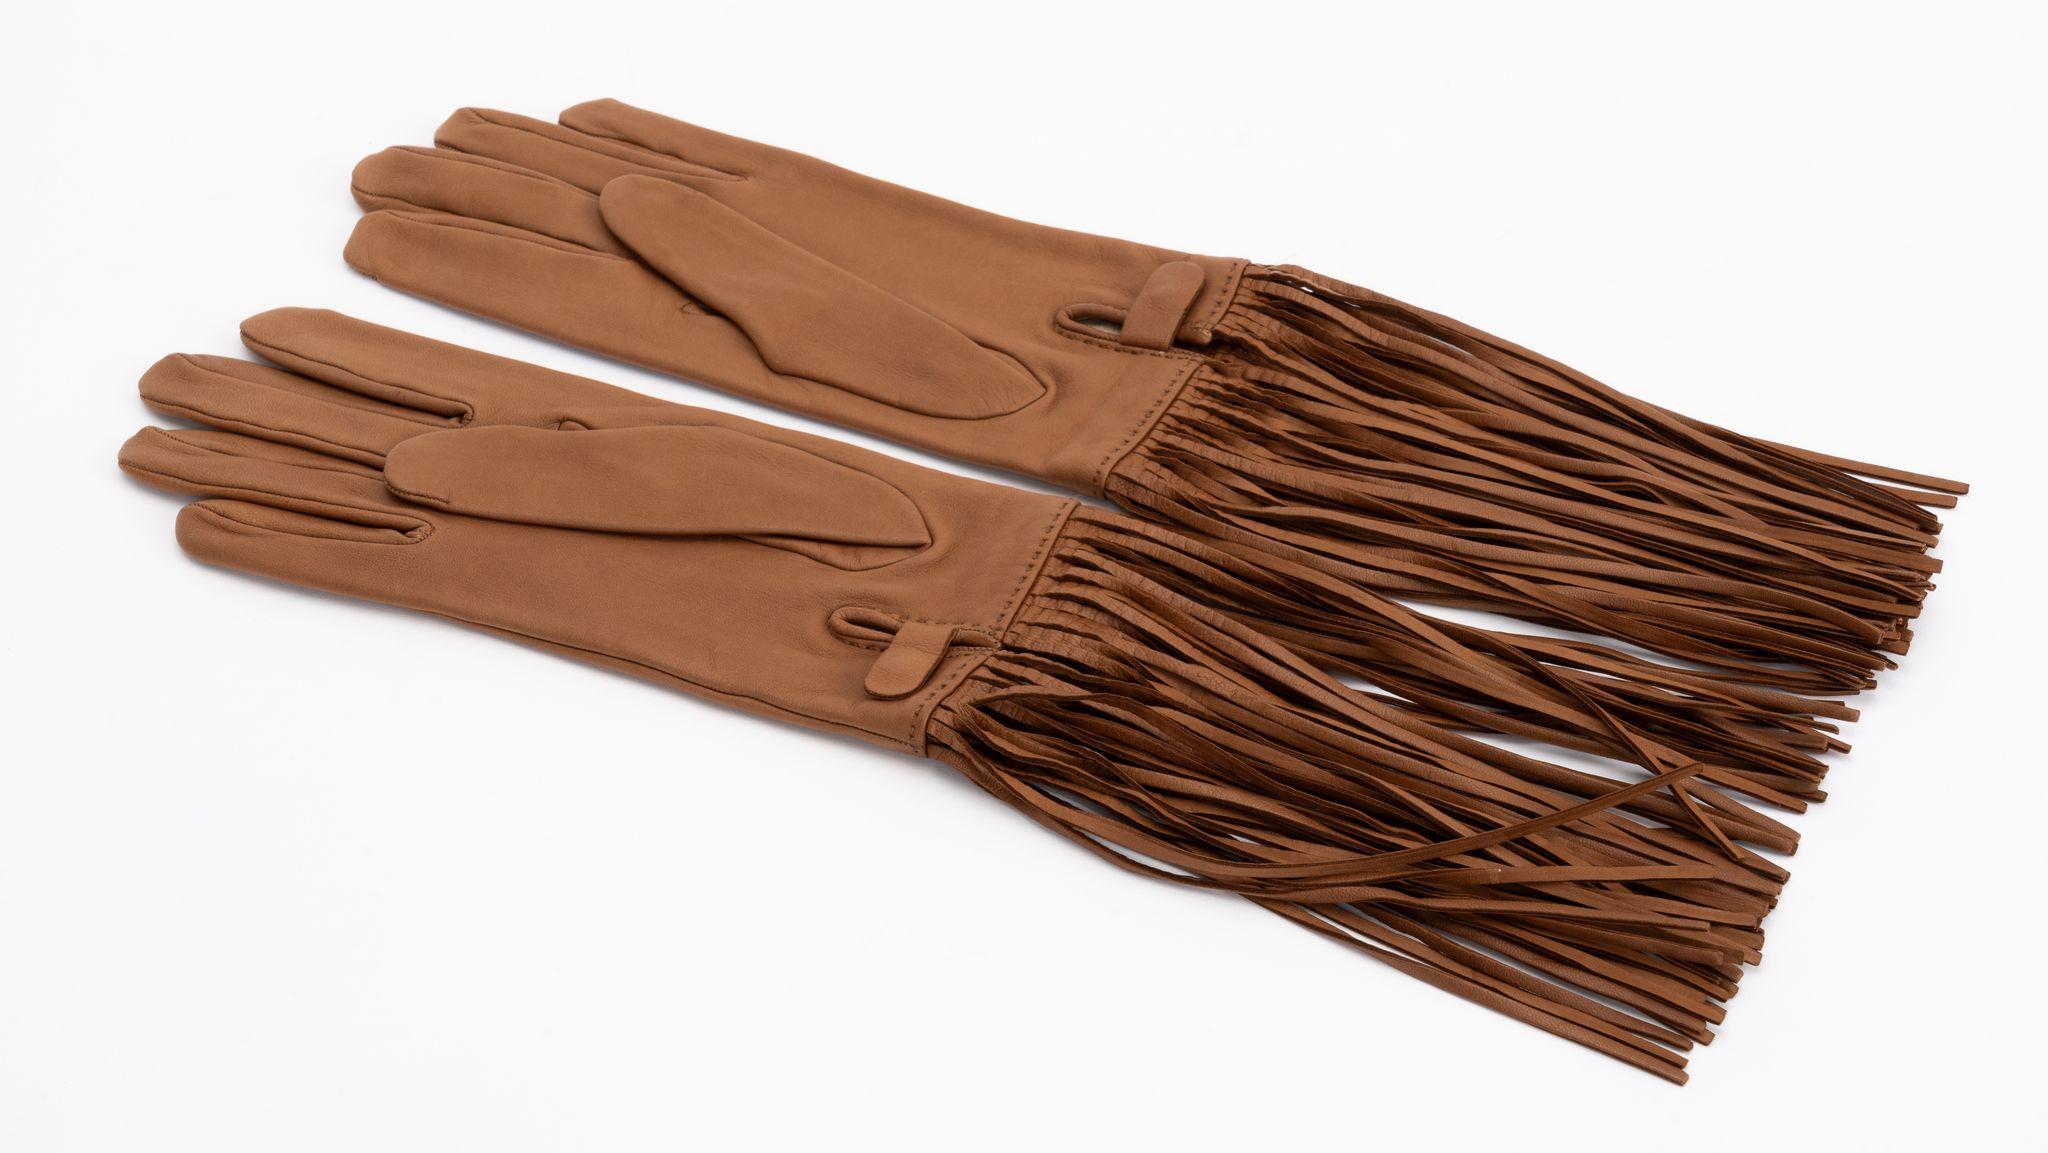 Hermès neue karamellfarbene Lammlederhandschuhe mit langer Fransenverzierung. Seidenfutter, Größe 8.